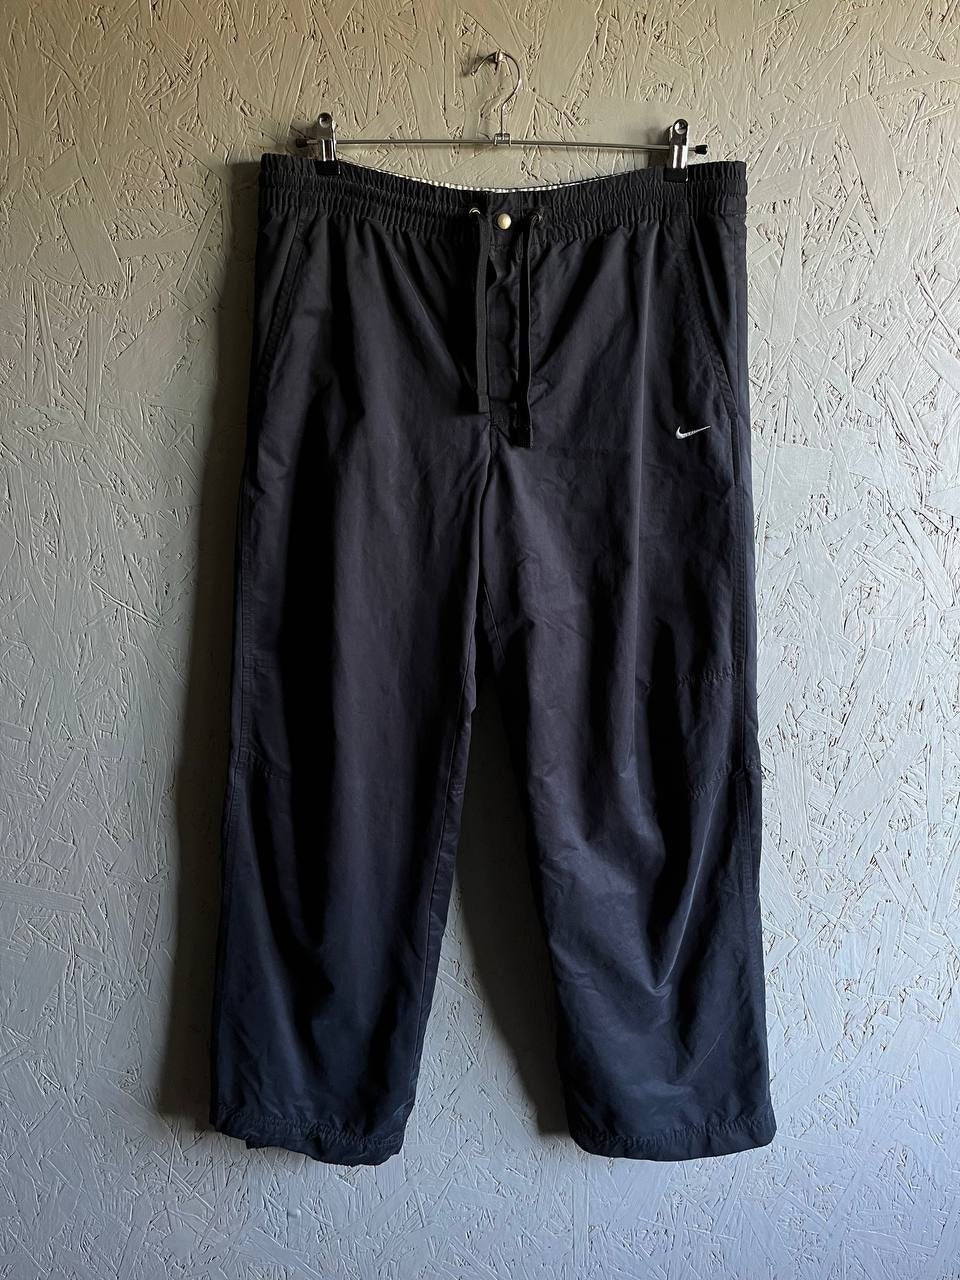 01.11.23 - VTG TRACK PANTS - NIKE 2000s – Breakdalaww - Vintage Streetwear